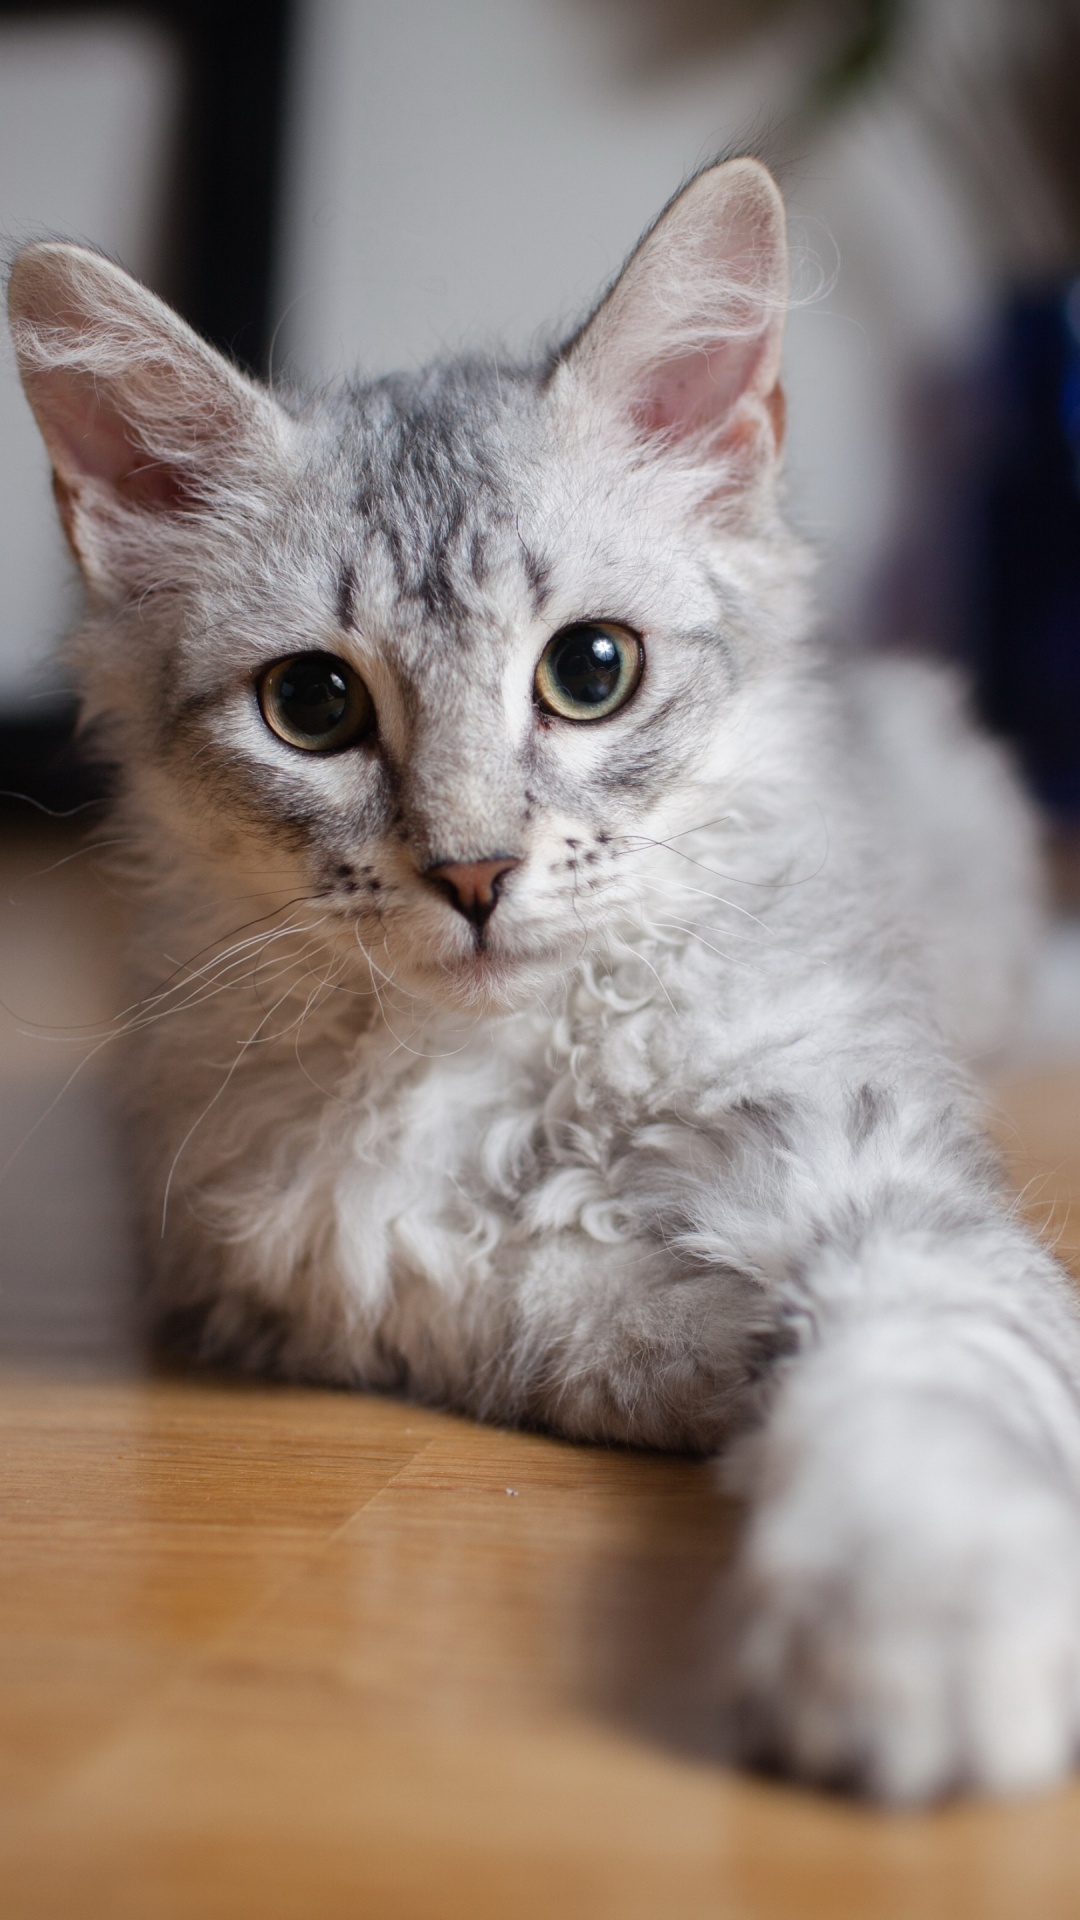 小猫, 土耳其安哥拉, 英国短毛猫, 缅因, 中小型猫 壁纸 1080x1920 允许